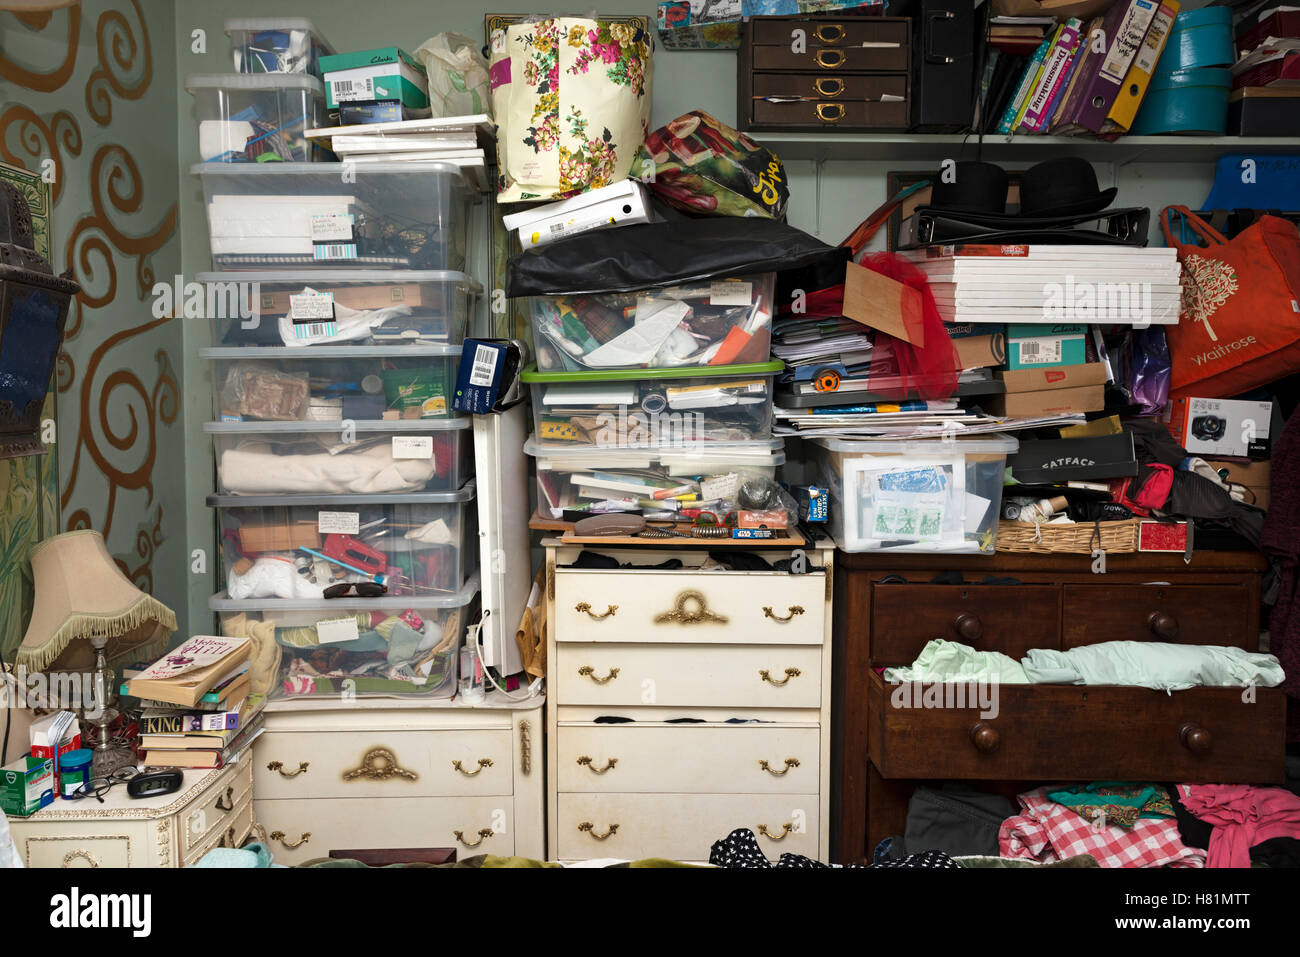 Clutter in ladies bedroom Stock Photo